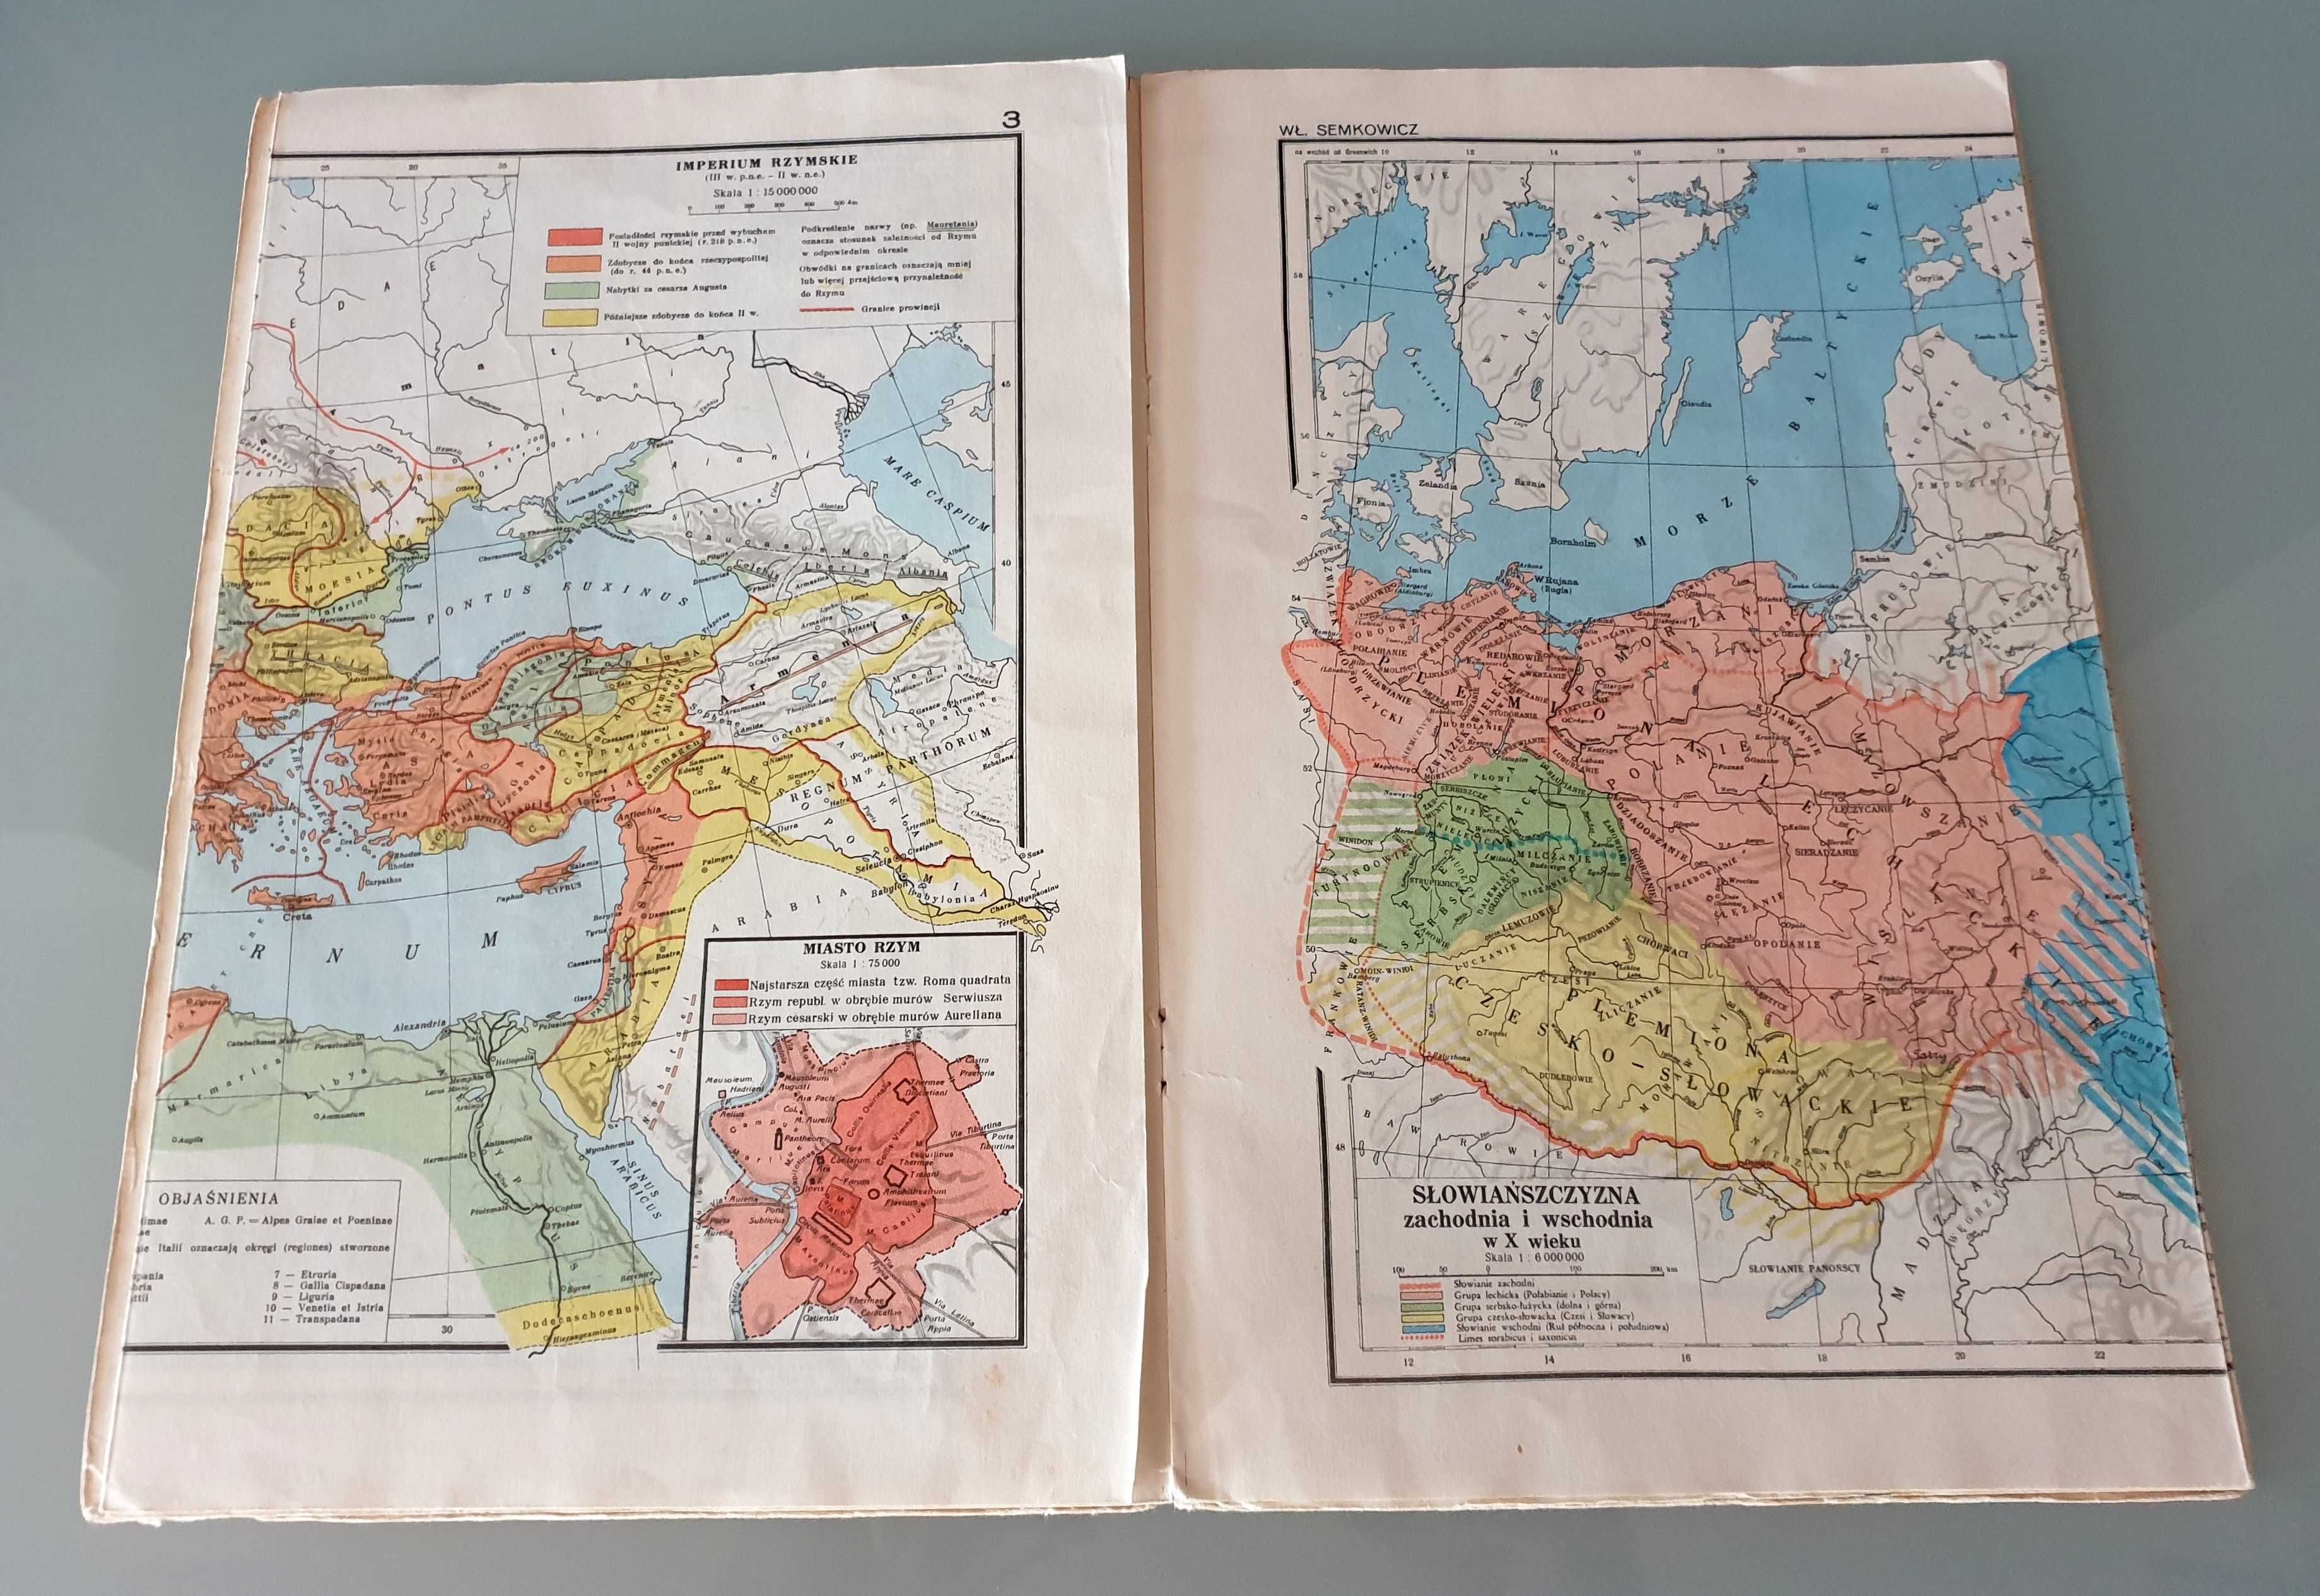 Nanke, Piotrowicz, Semkowicz - Mały atlas historyczny